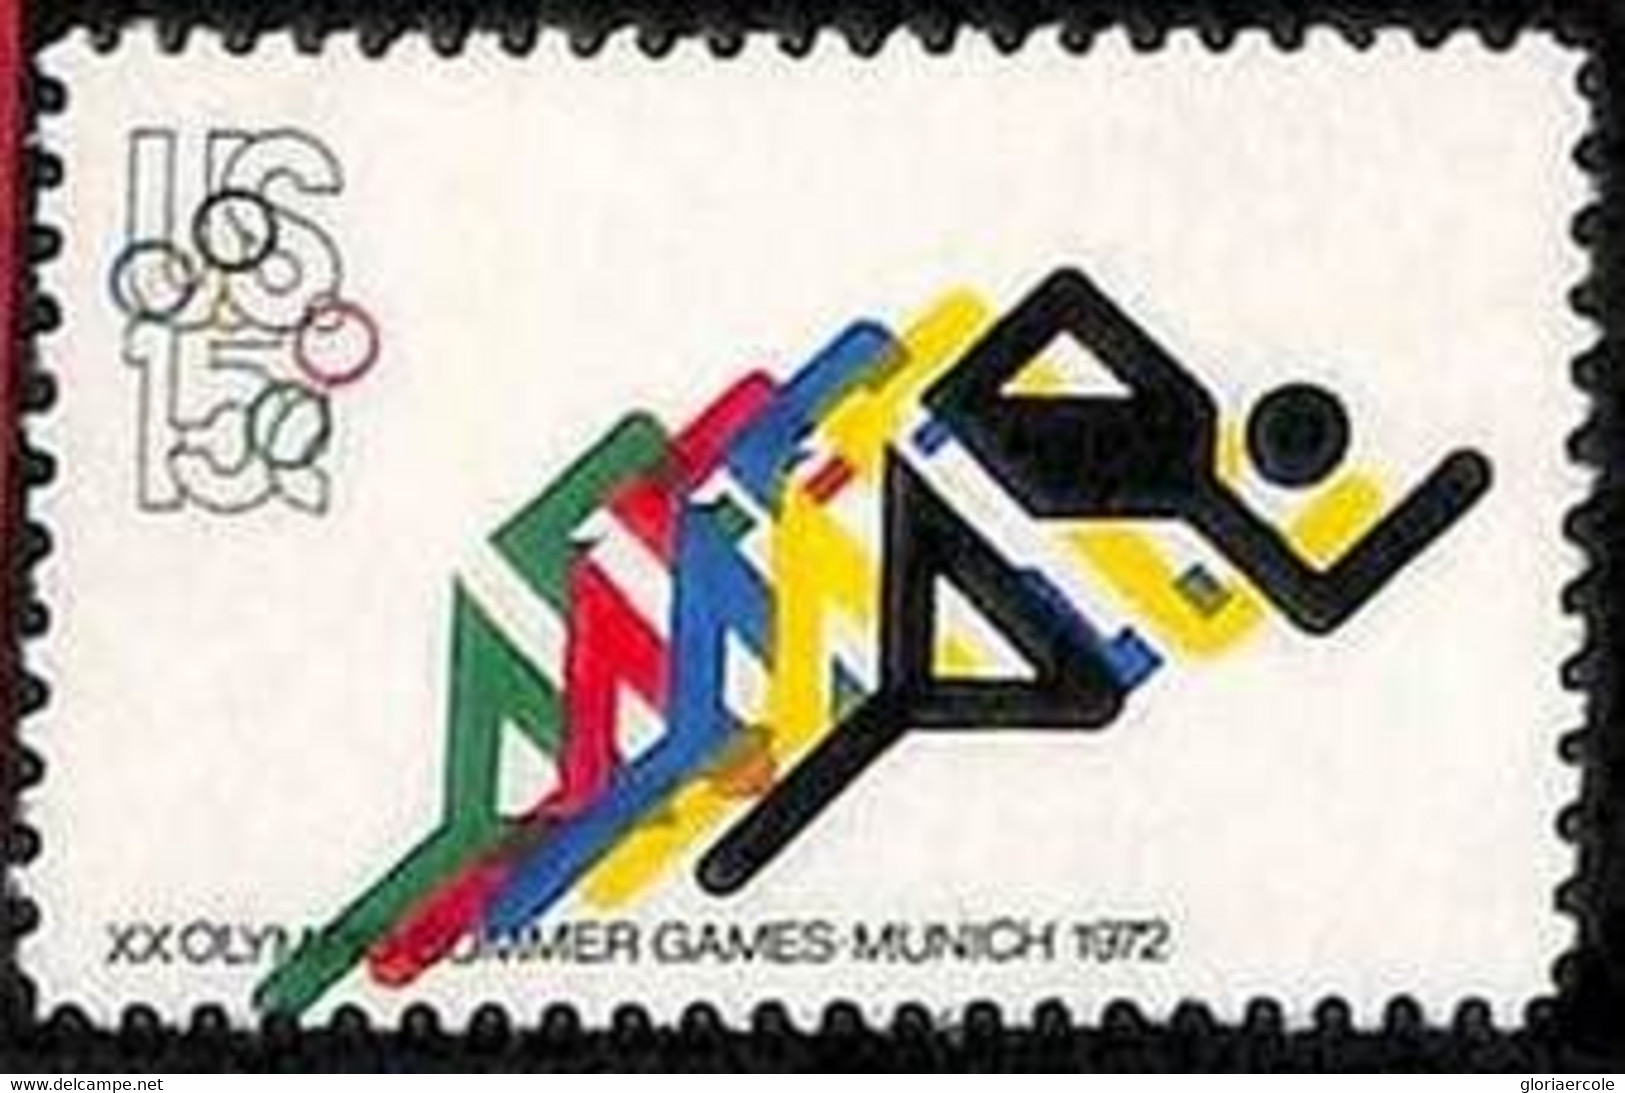 94809d - USA - STAMPS - Sc # 1462 Olympic Games -  SHIFTED PRINT - MNH - Variétés, Erreurs & Curiosités